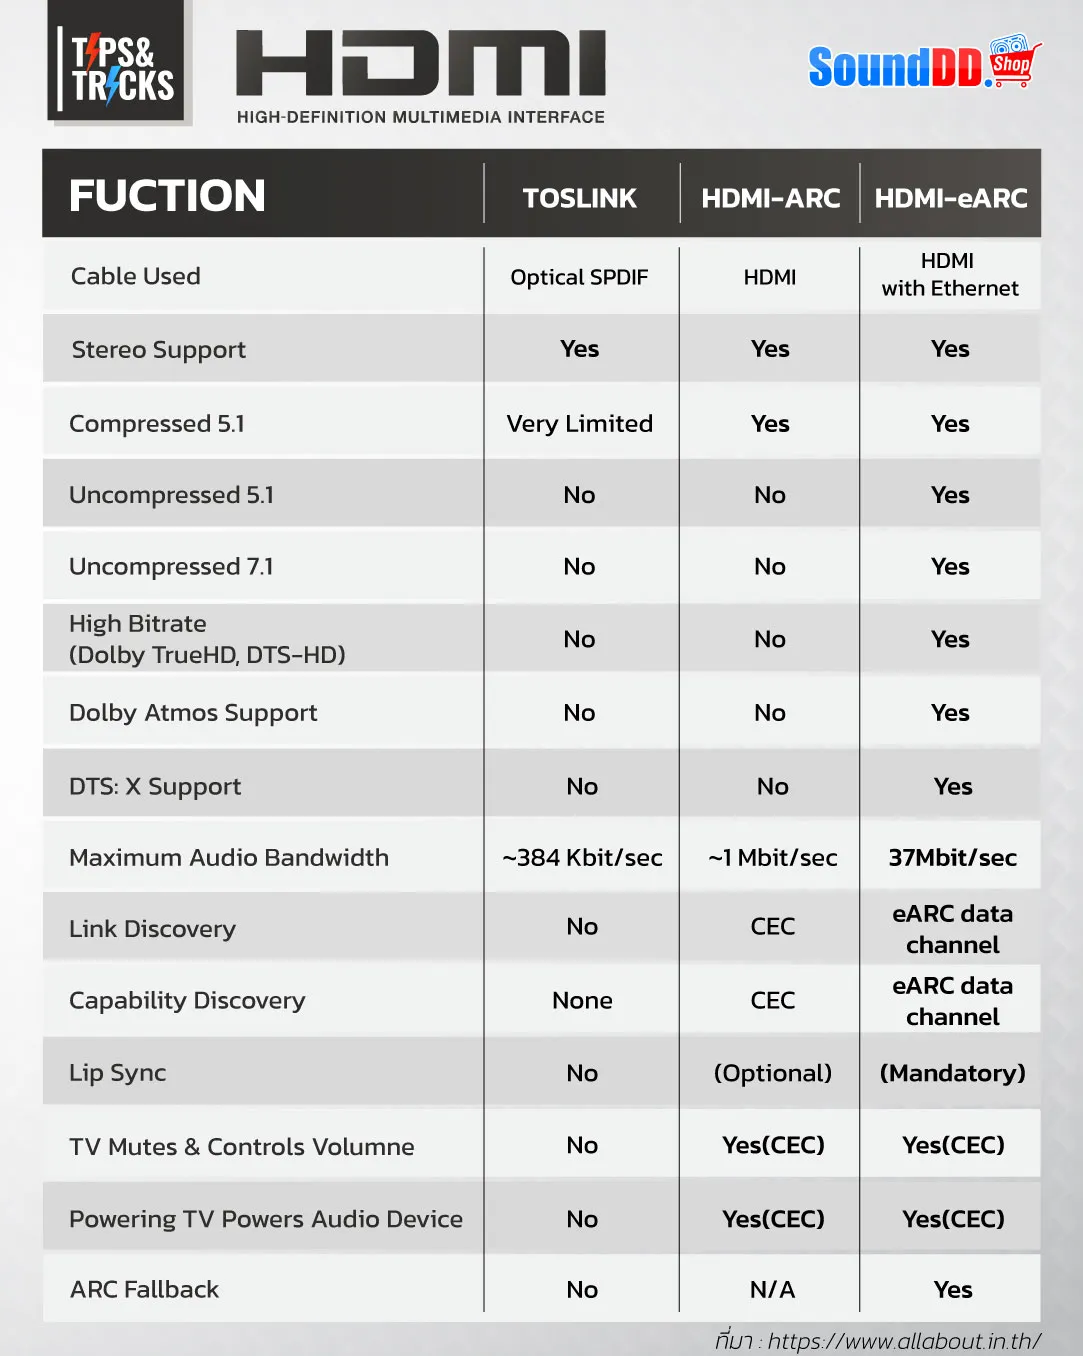 เปรียบเทียบ HDMI, HDMI-Arc และ HDMI-eARC